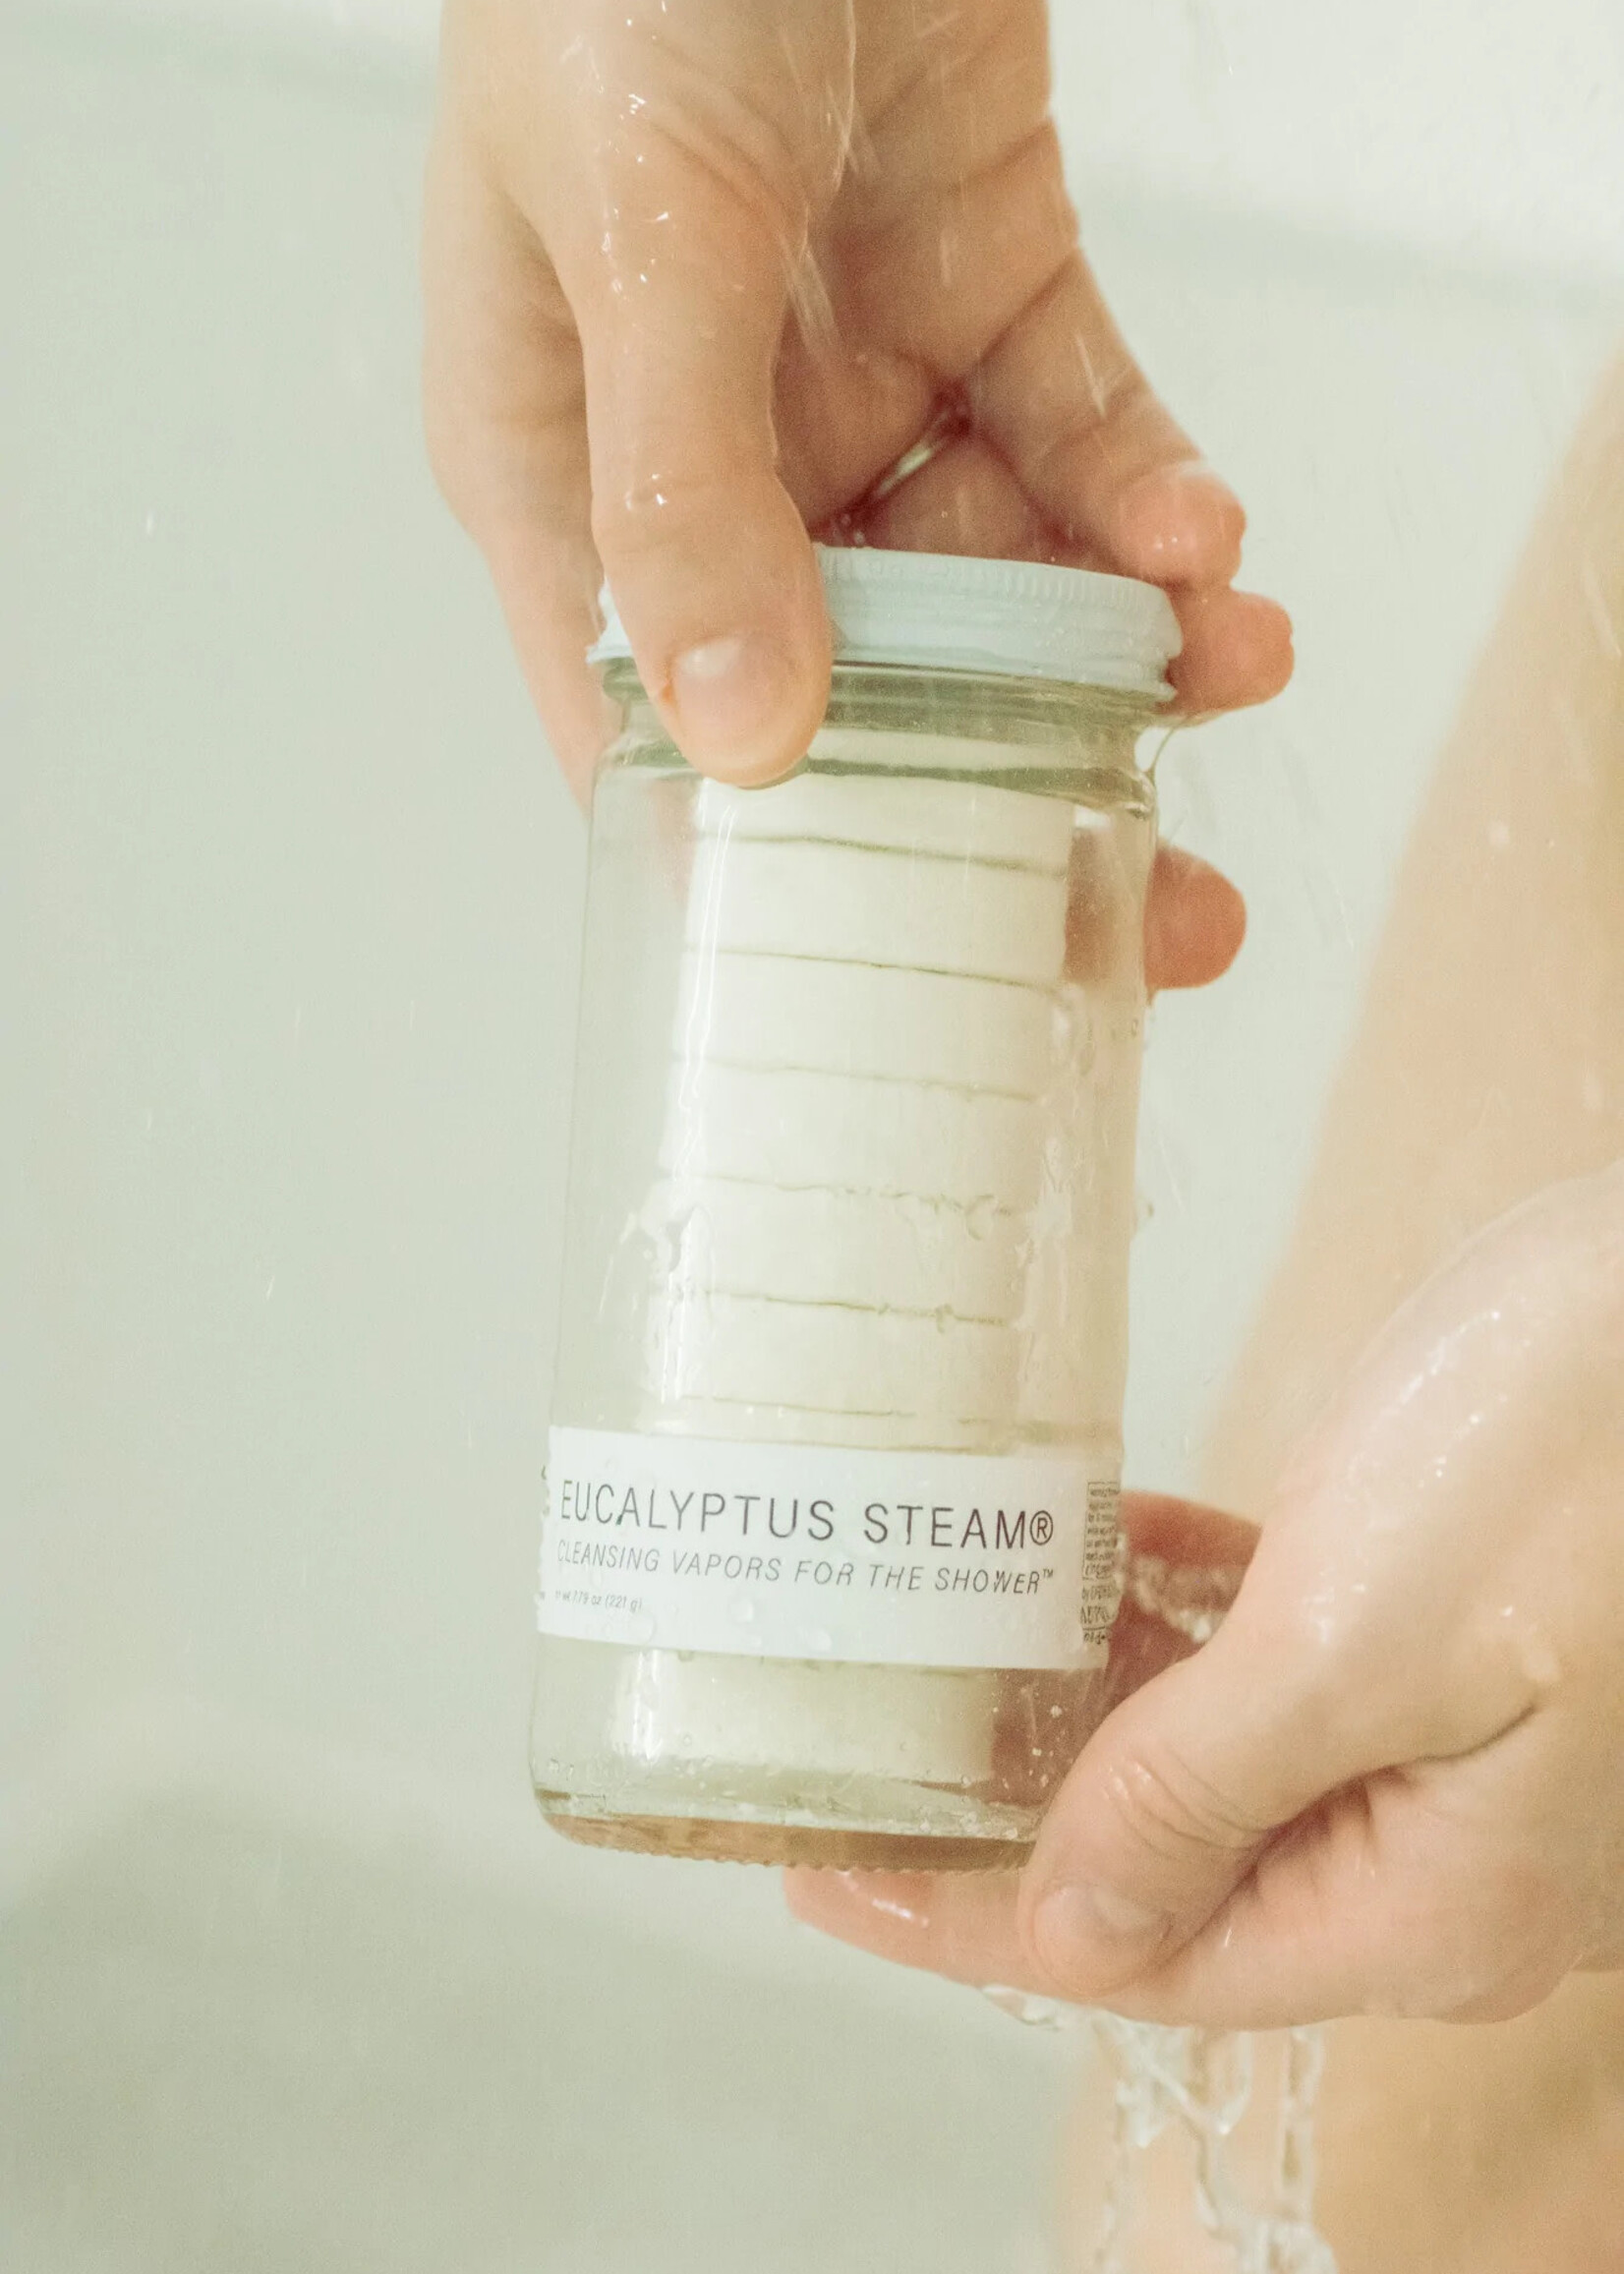 Eucalyptus Steam® Cleansing vapors for the shower